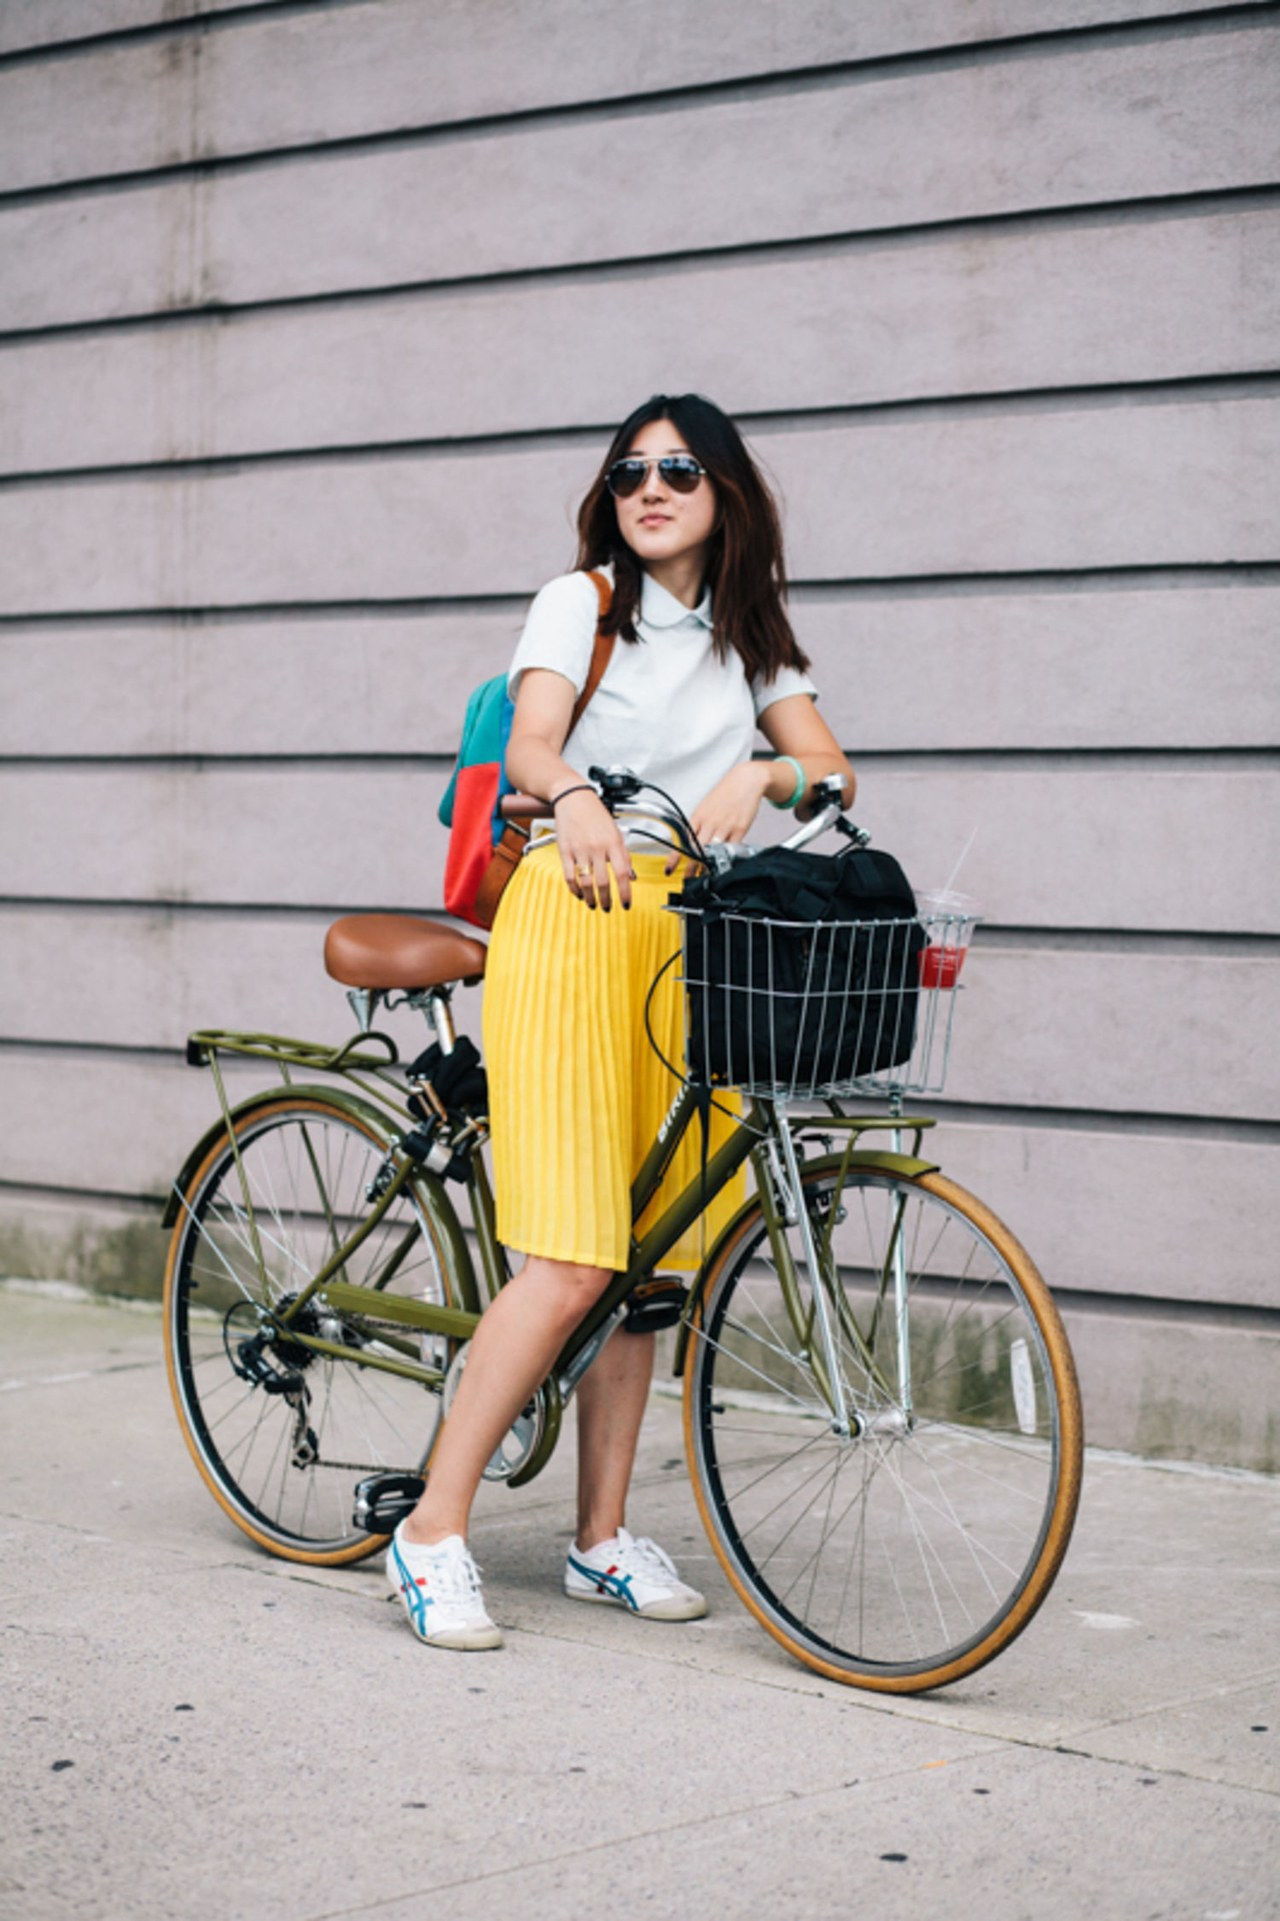 privilegiado mode girl on bike yellow skirt